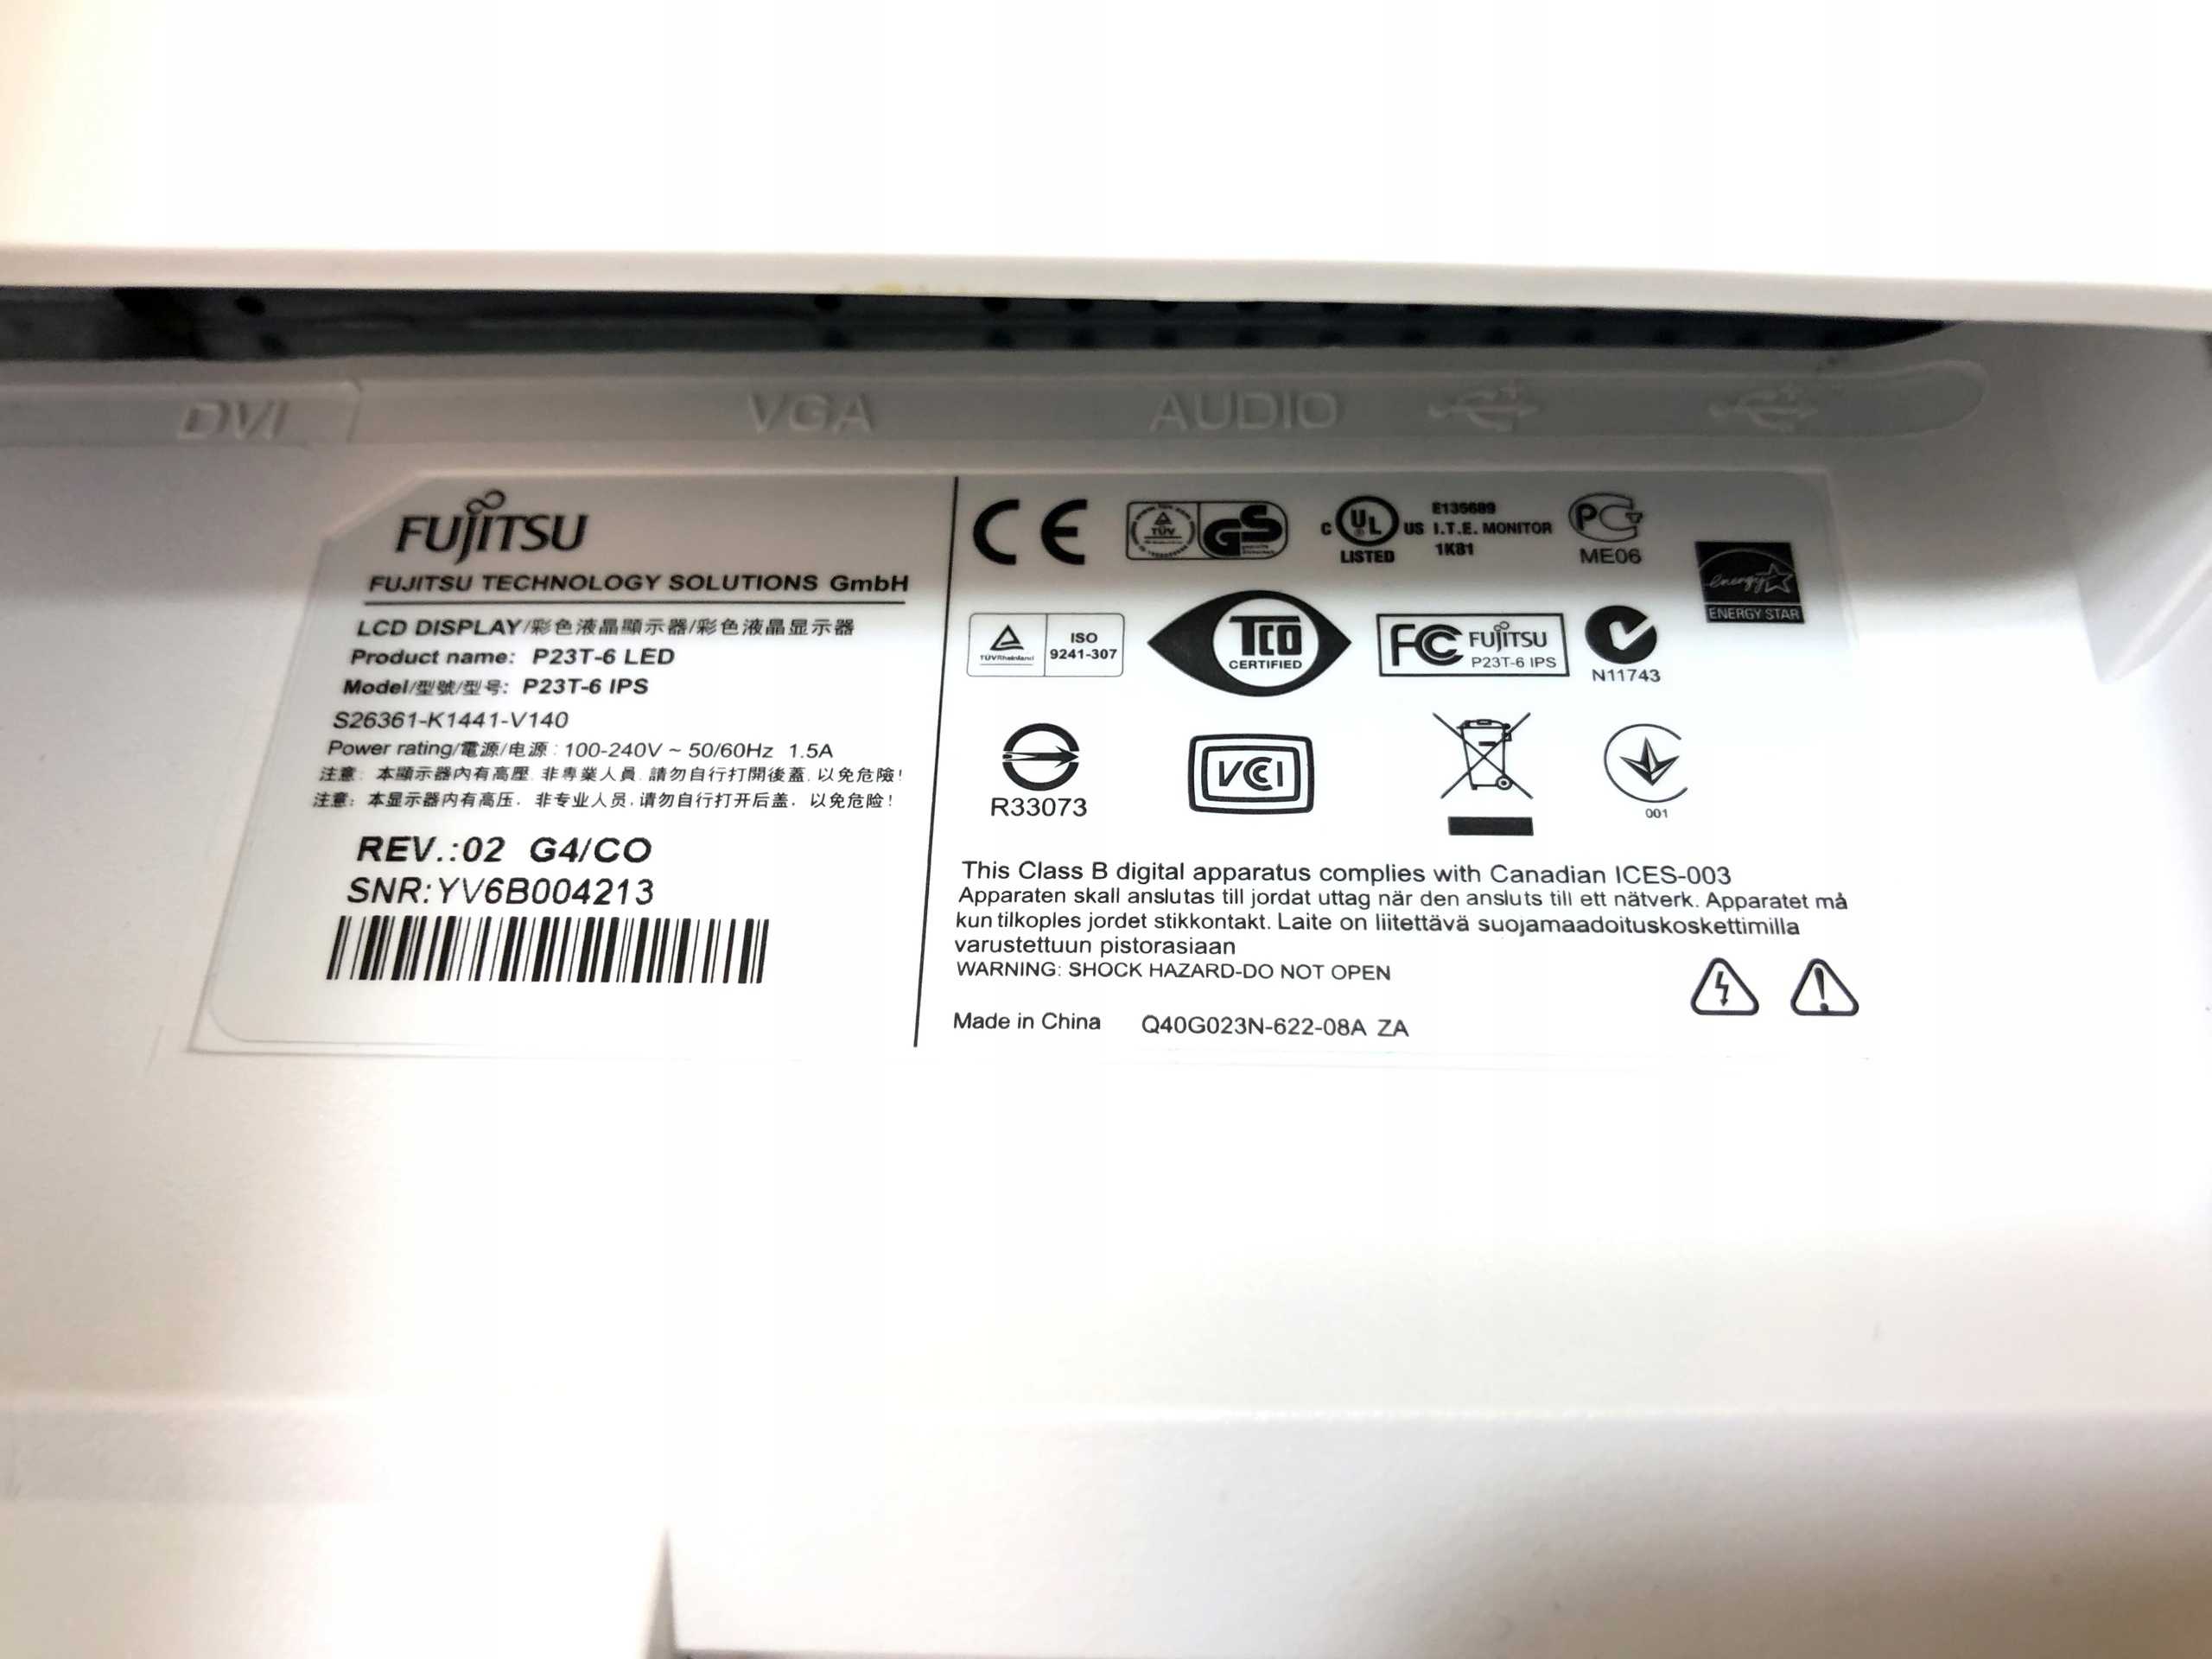 Fujitsu p23t-6 fpr 3d - купить  в уфа, скидки, цена, отзывы, обзор, характеристики - мониторы